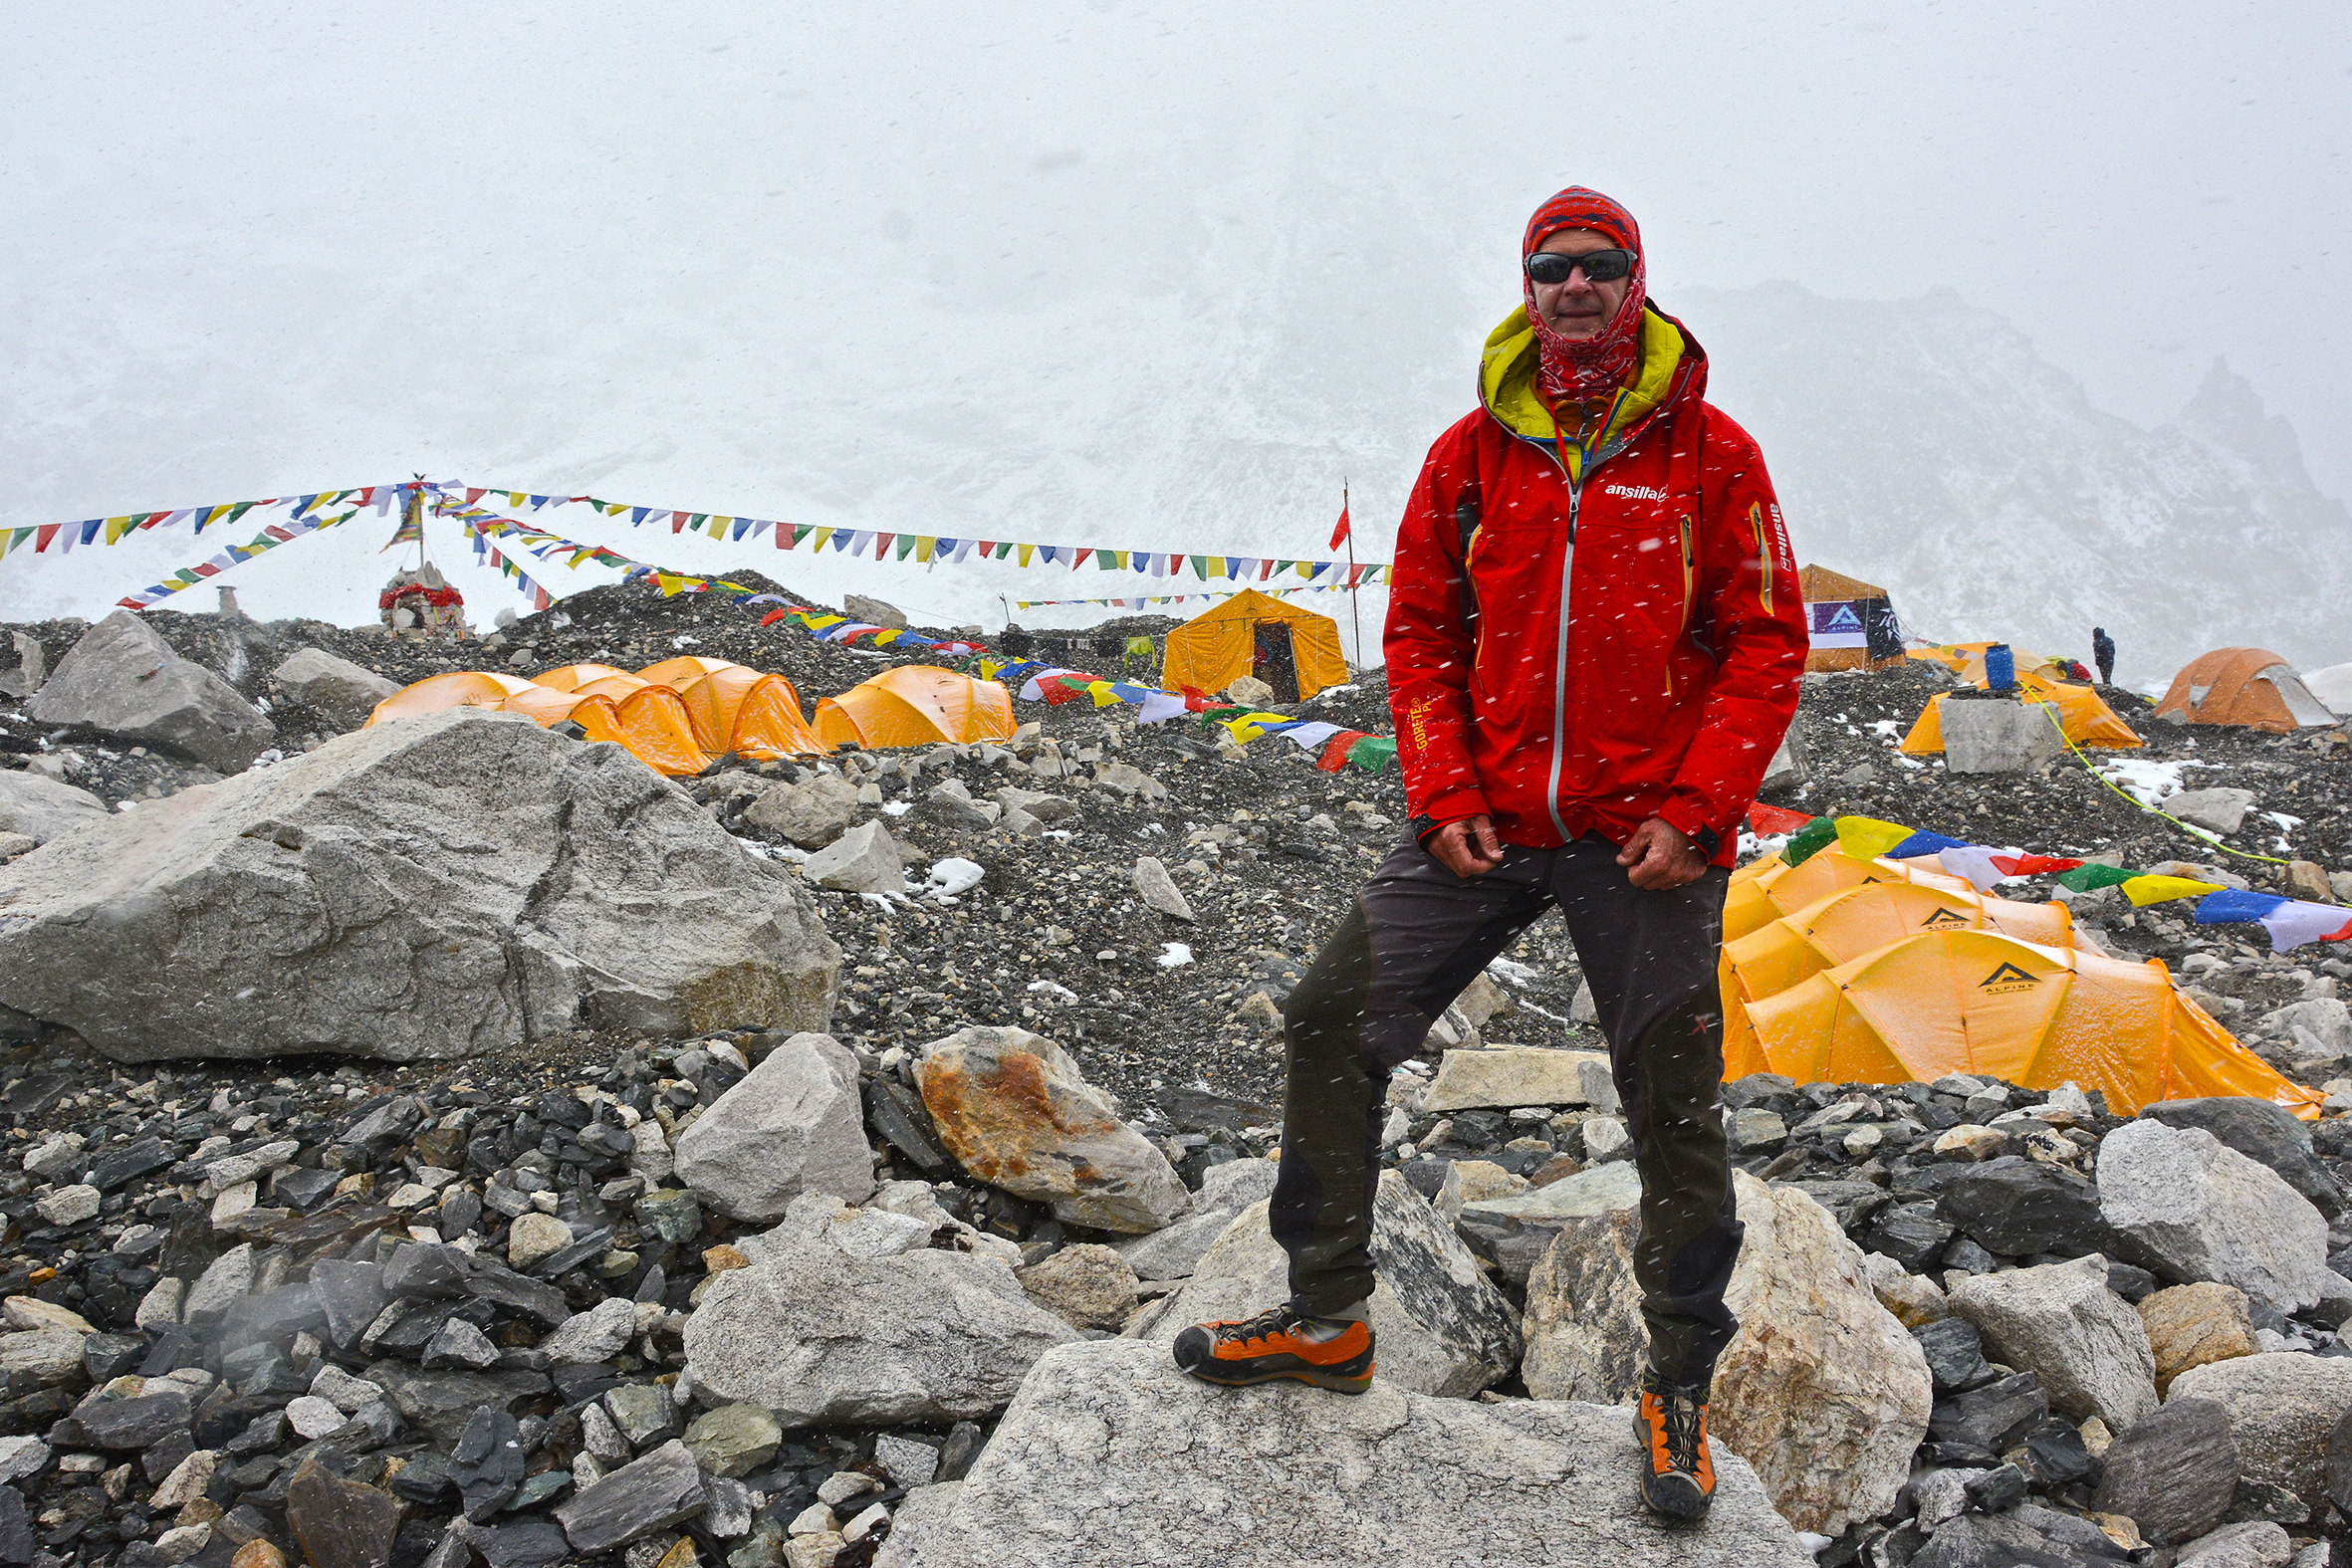 Entendendo-se: exercícios artísticos e meditativos para a exploração  criativa, Everest